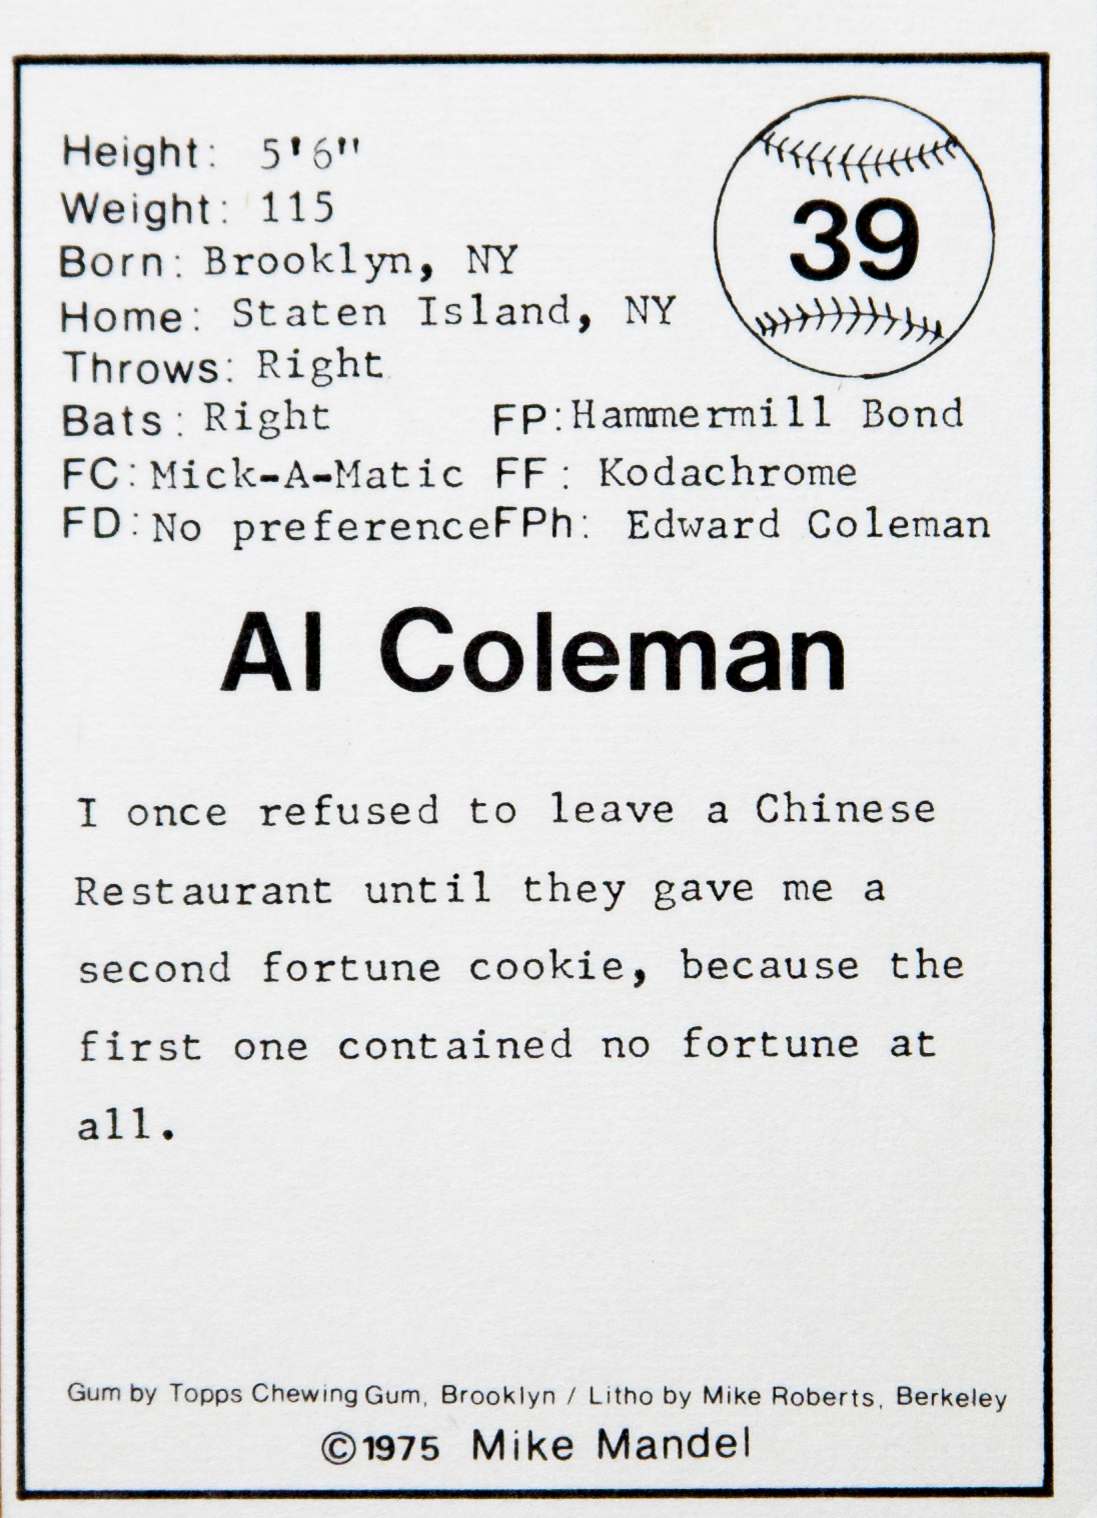 Al Coleman